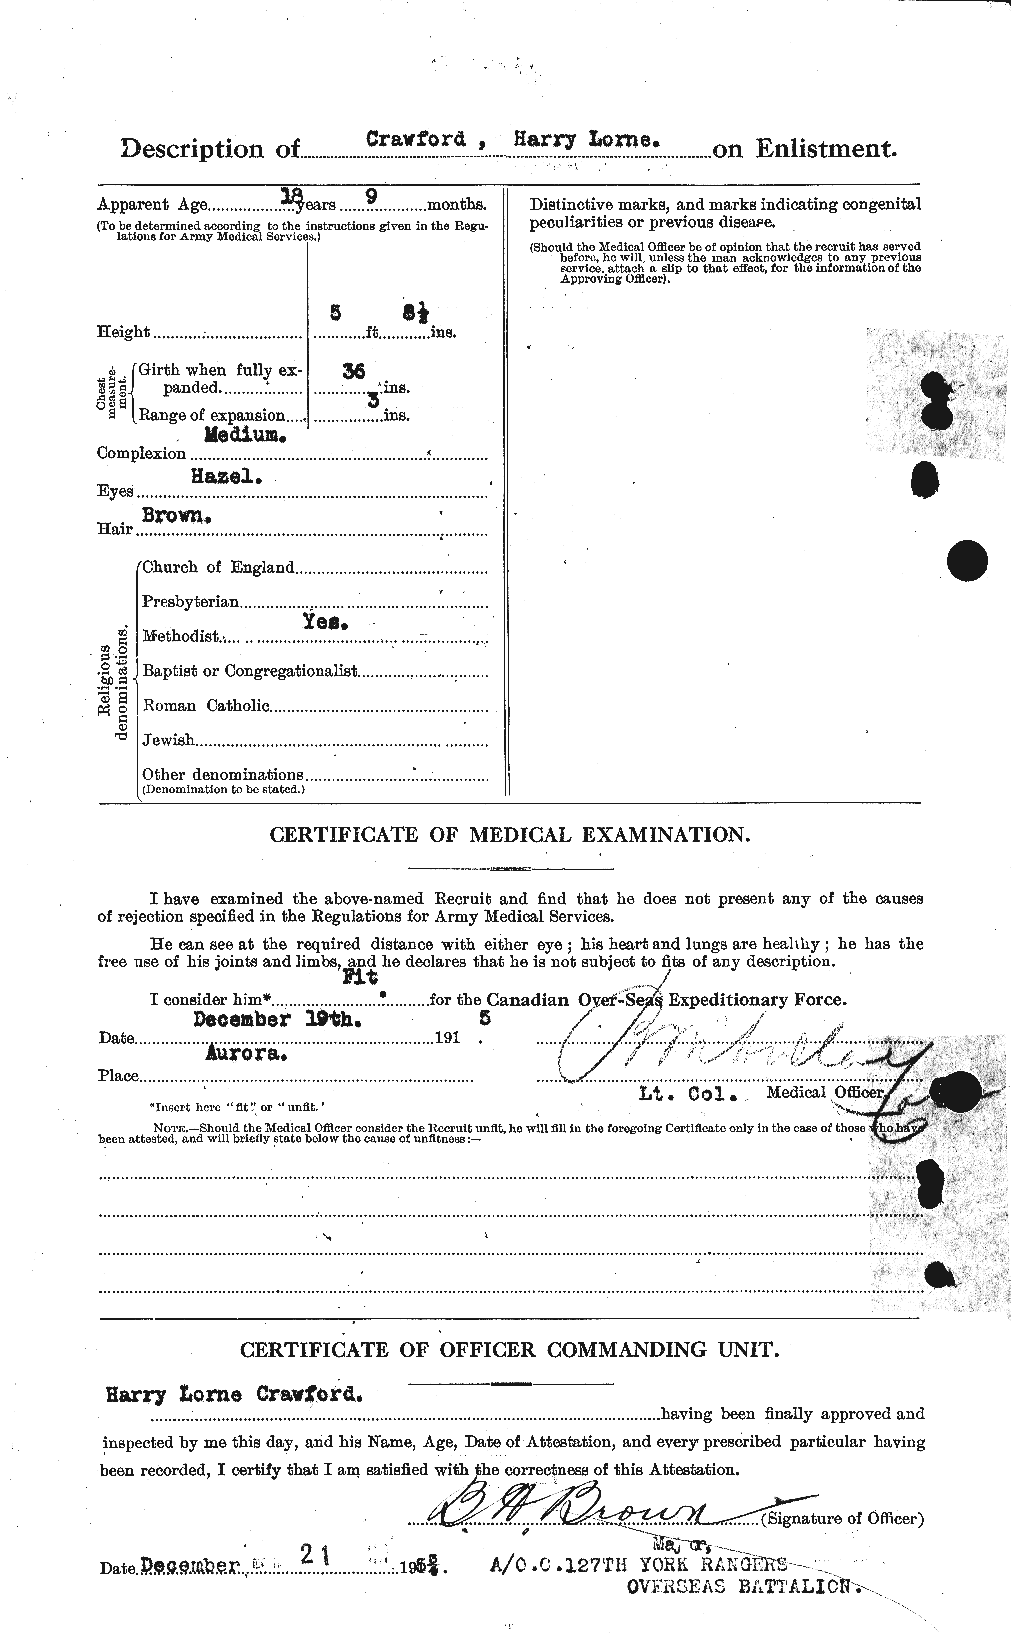 Dossiers du Personnel de la Première Guerre mondiale - CEC 060577b